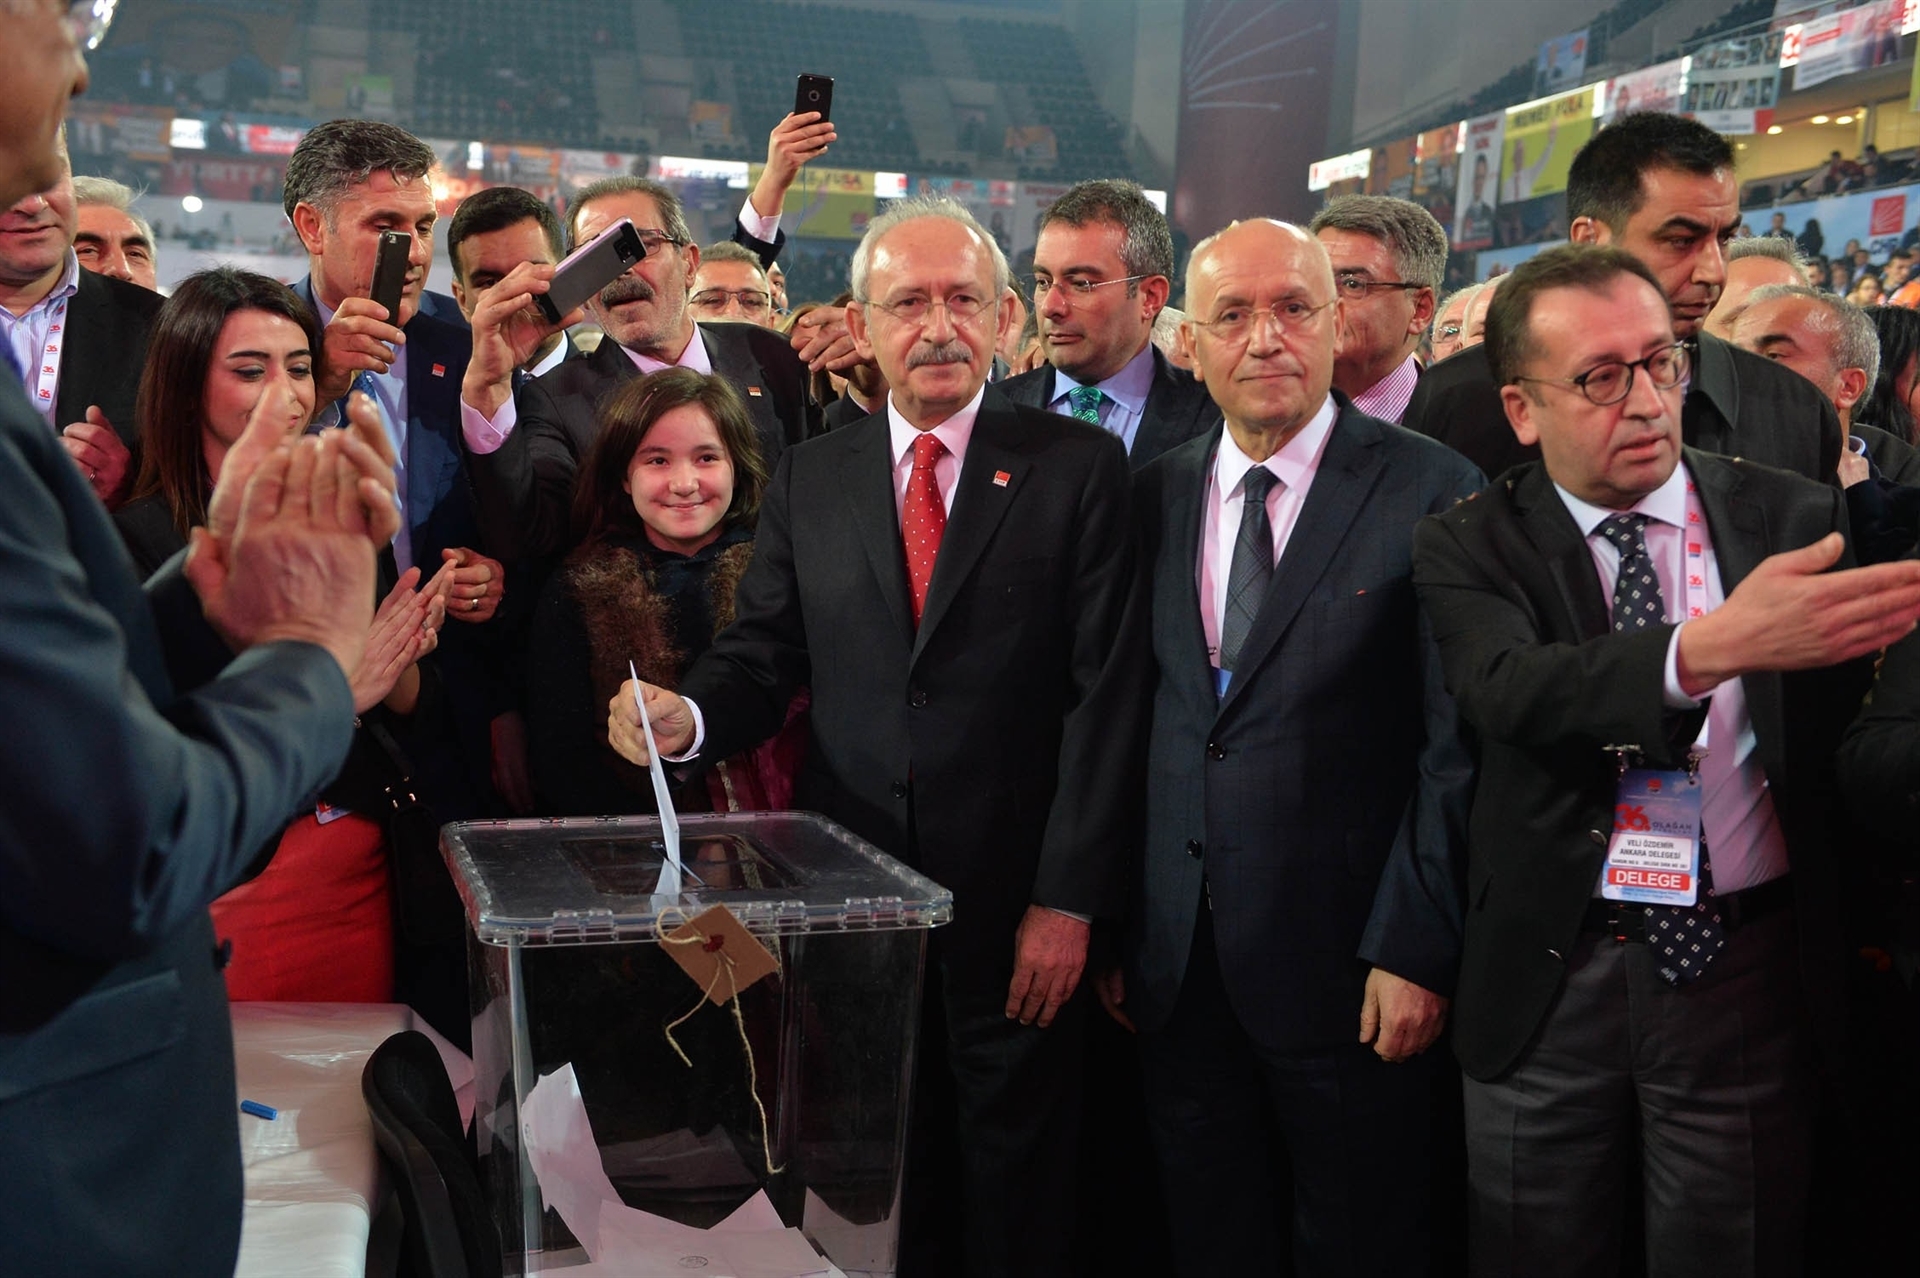 Kılıçdaroğlu seçim bildirgesini açıkladı